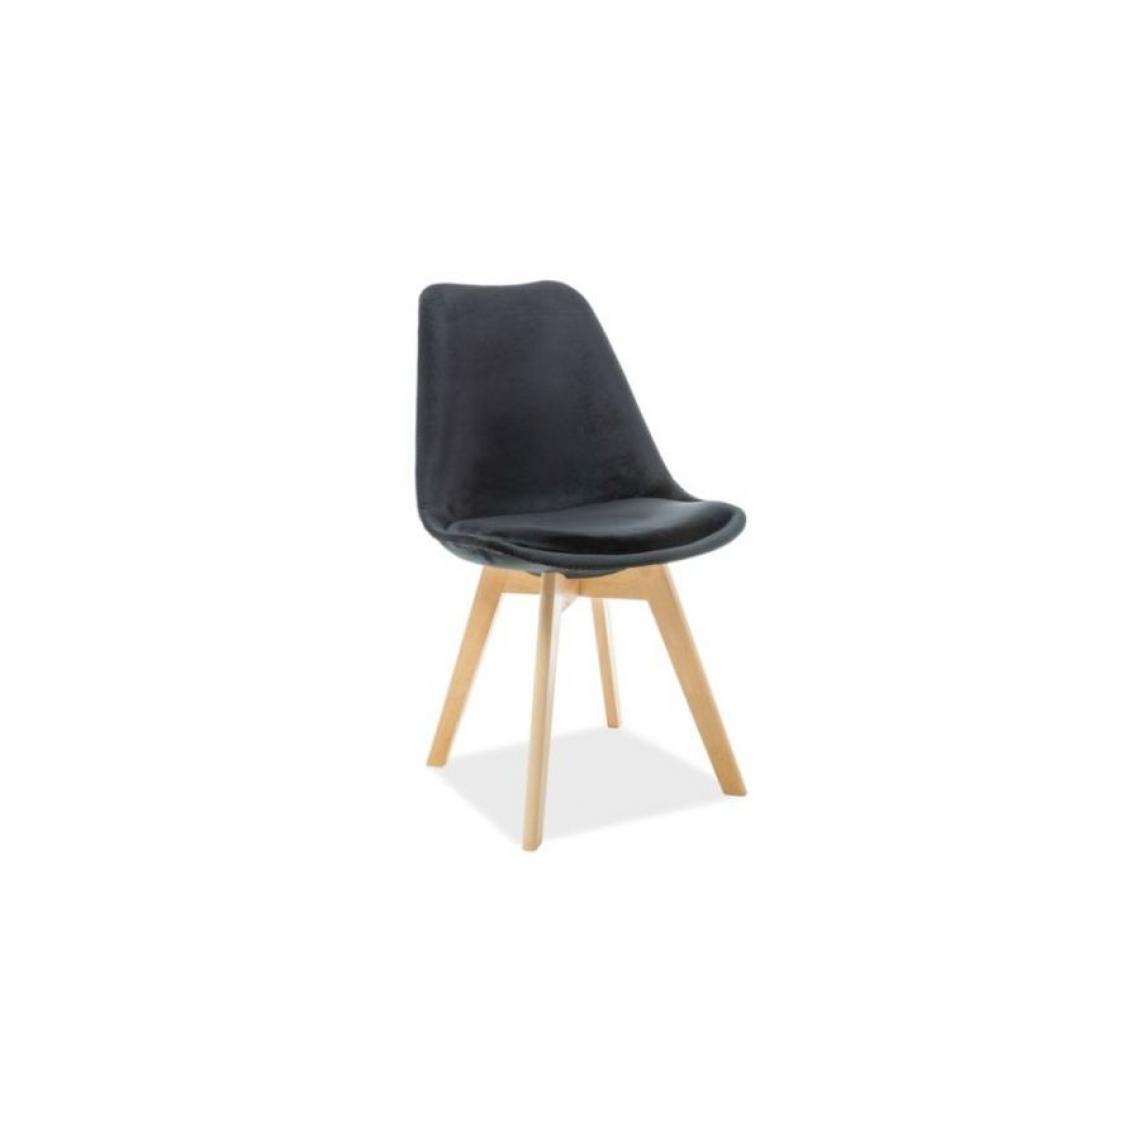 Hucoco - LEONIE | Chaise moderne avec pieds en bois | Dimensions : 86x52x48 cm | Rembourrage en velours | Salle à manger bureau - Noir - Chaises